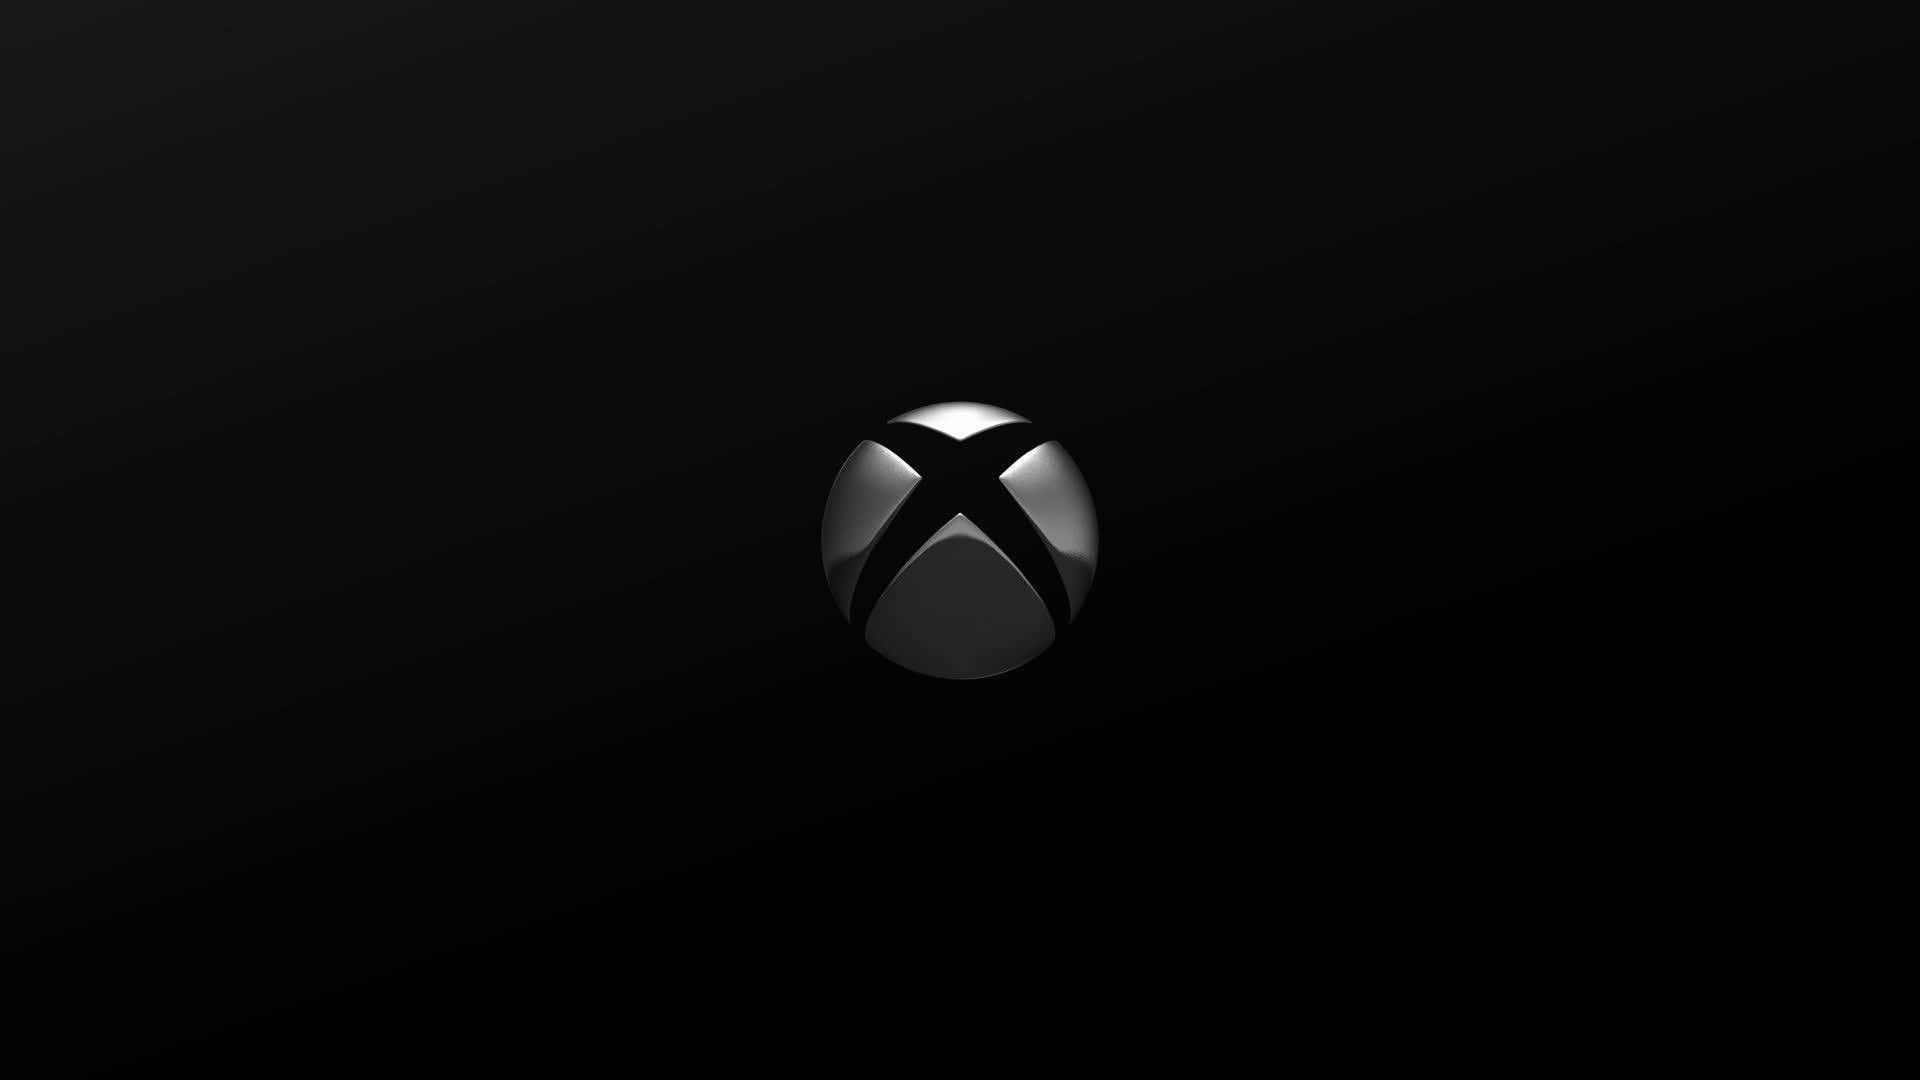 Logotipode Xbox Series X En Color Plateado. Fondo de pantalla